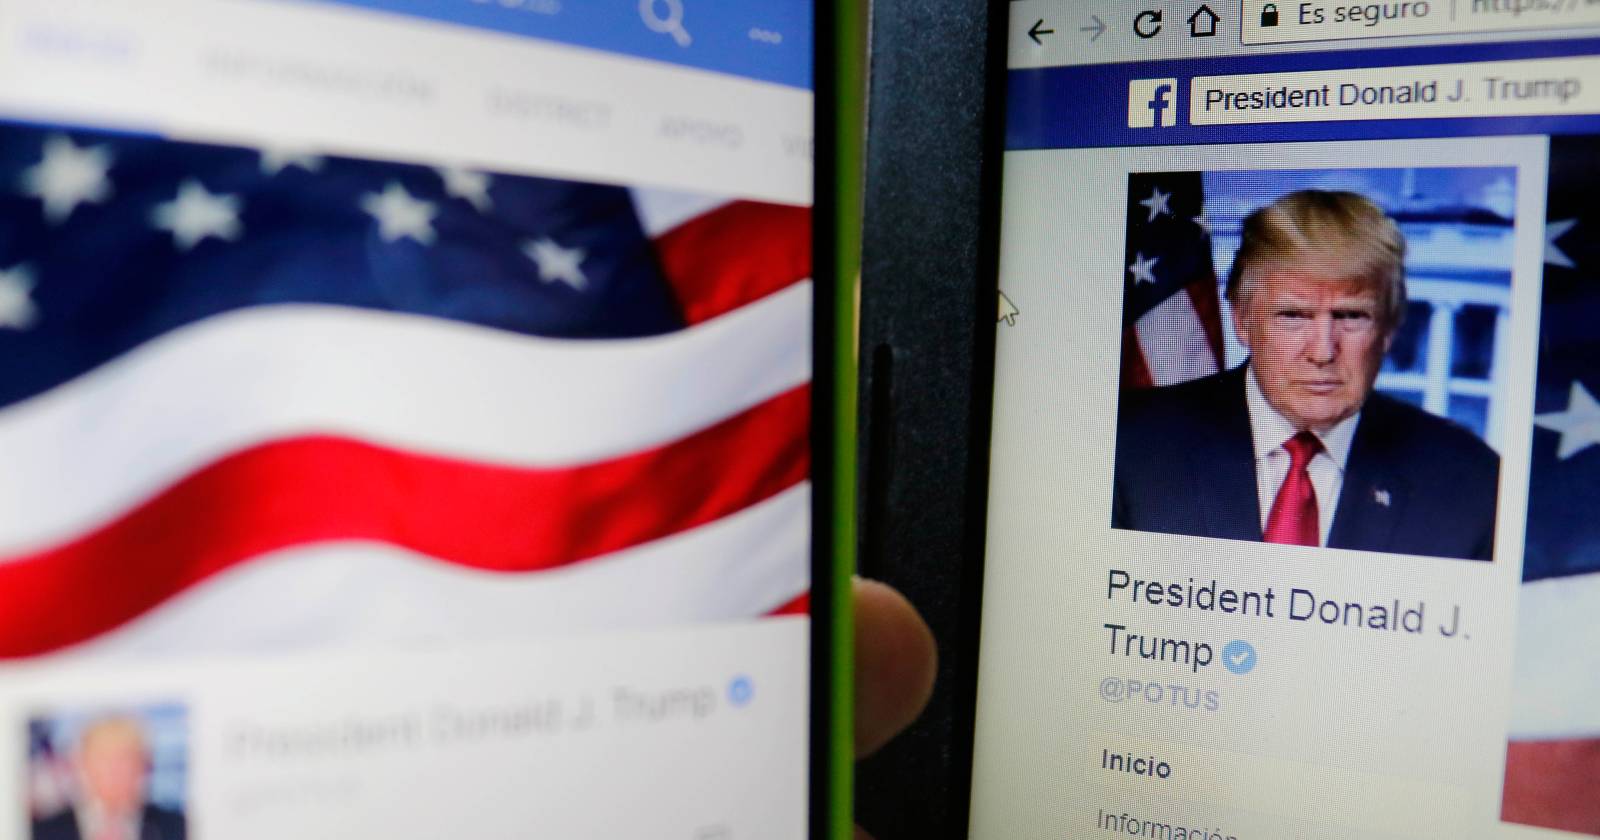 Trump plataforma de redes sociales